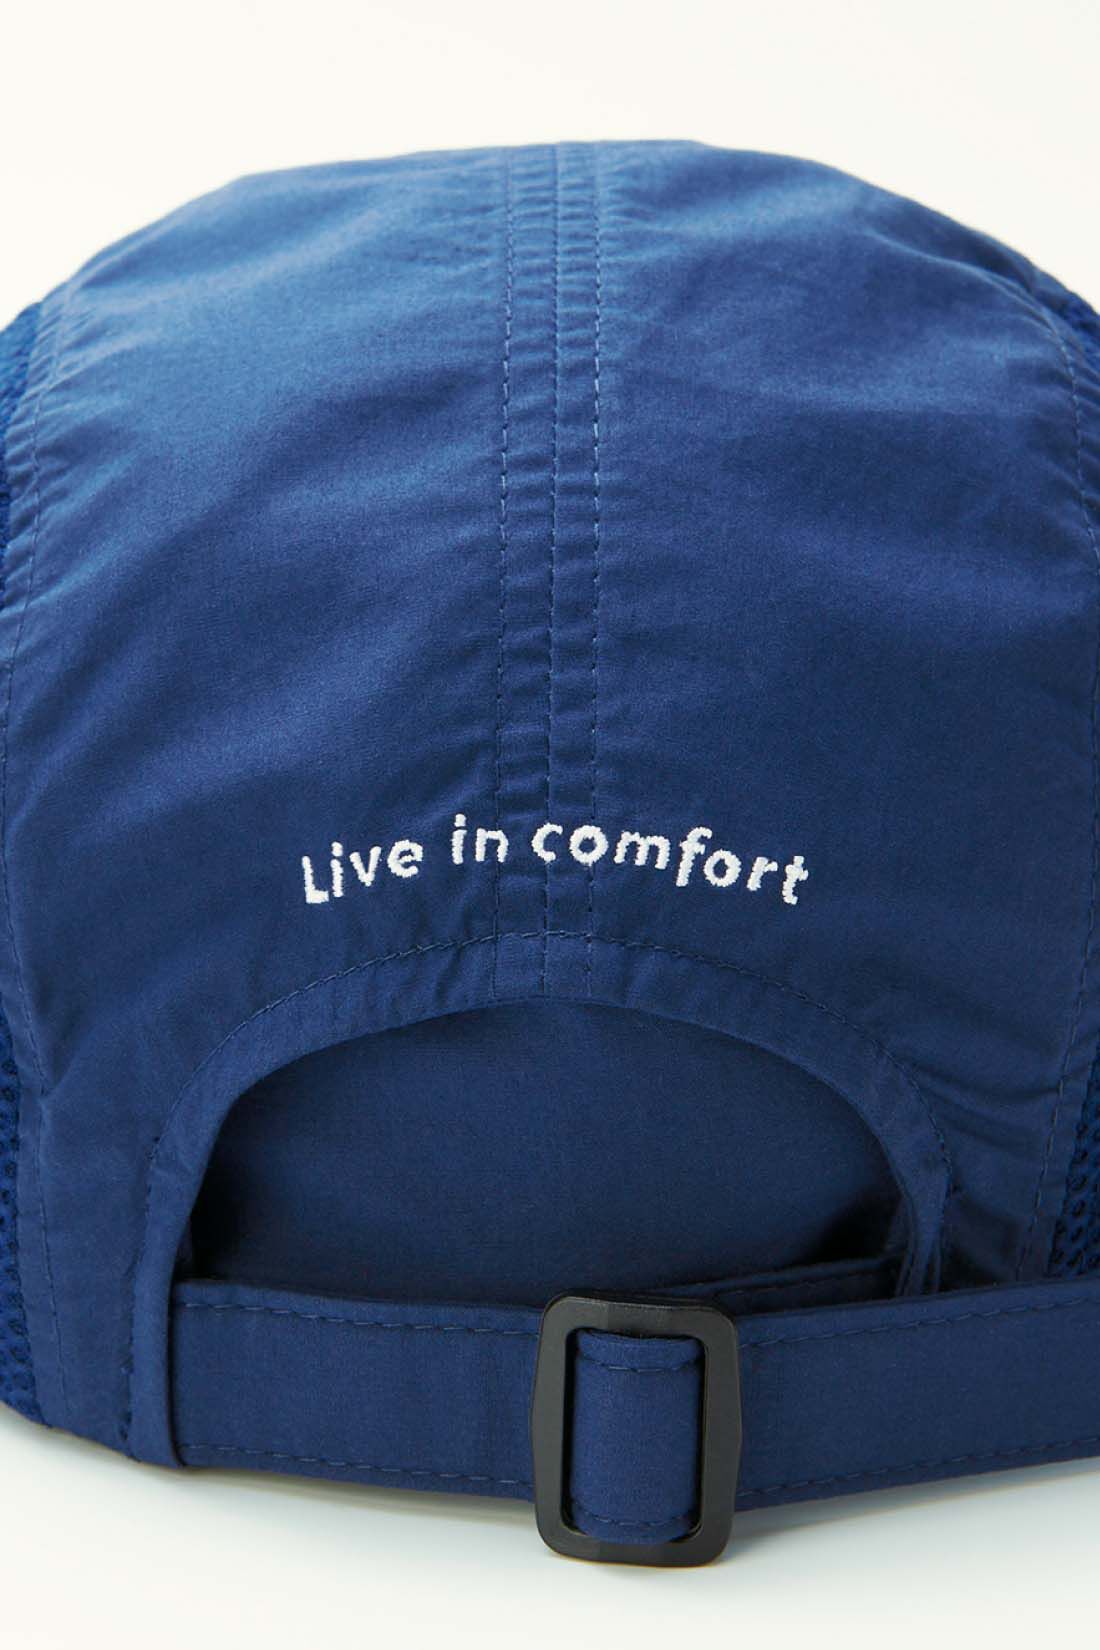 Live in  comfort|リブ イン コンフォート　丸洗いできる 涼やかUVカットメッシュキャップ〈ネイビー〉|後ろのアジャスターでサイズ感を調節可能。 ※お届けするカラーとは異なります。